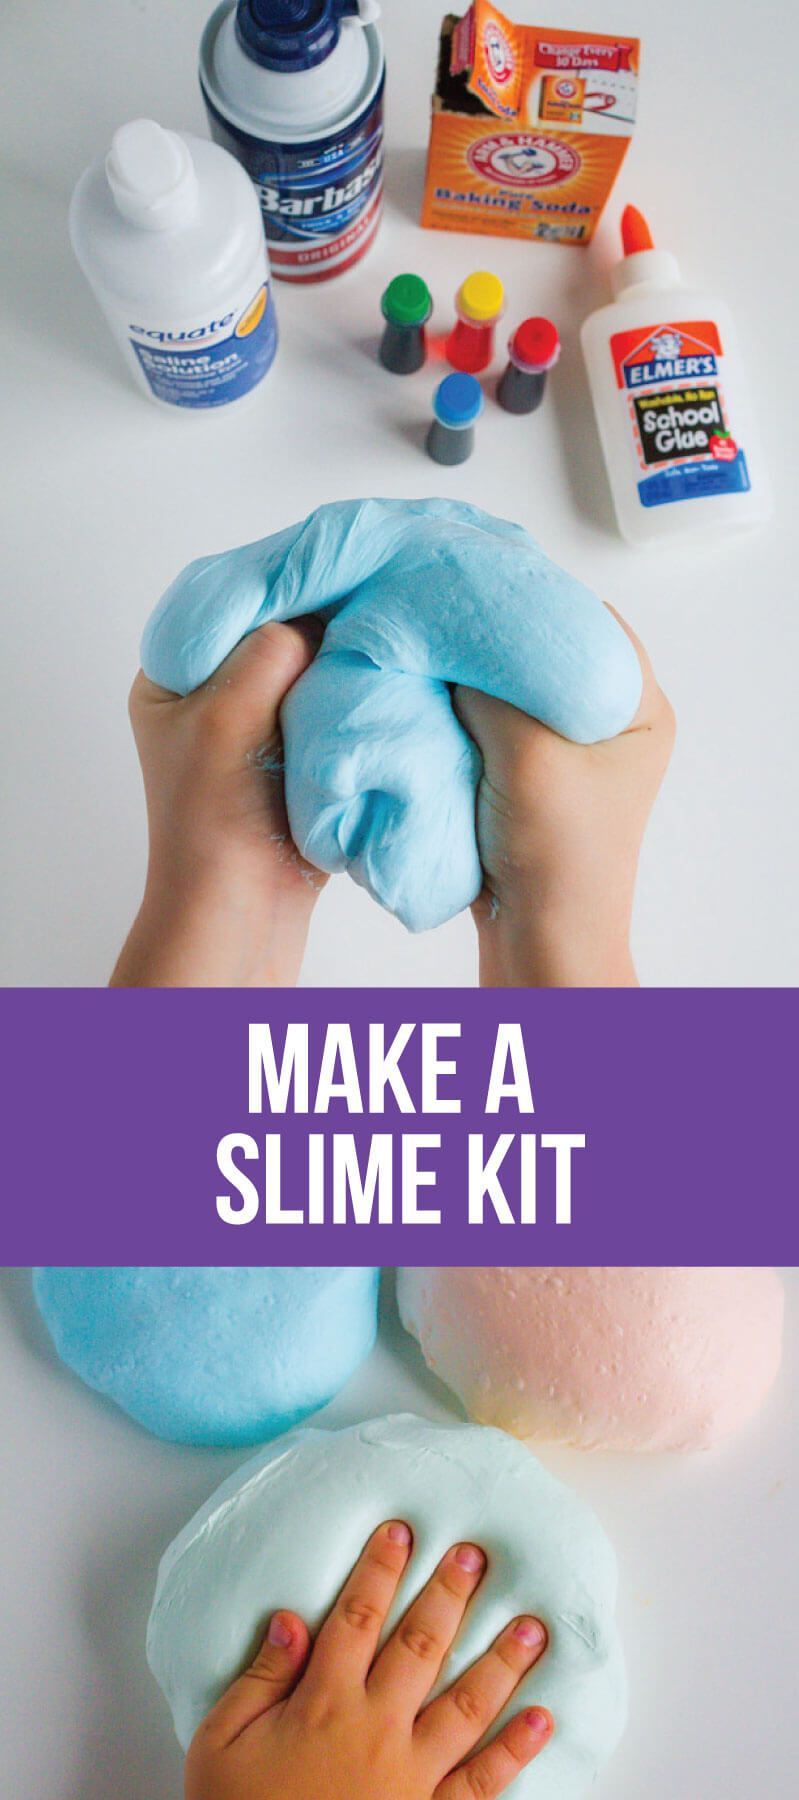 Make a Slime Kit - Make a Slime Kit -   17 diy Slime kit ideas